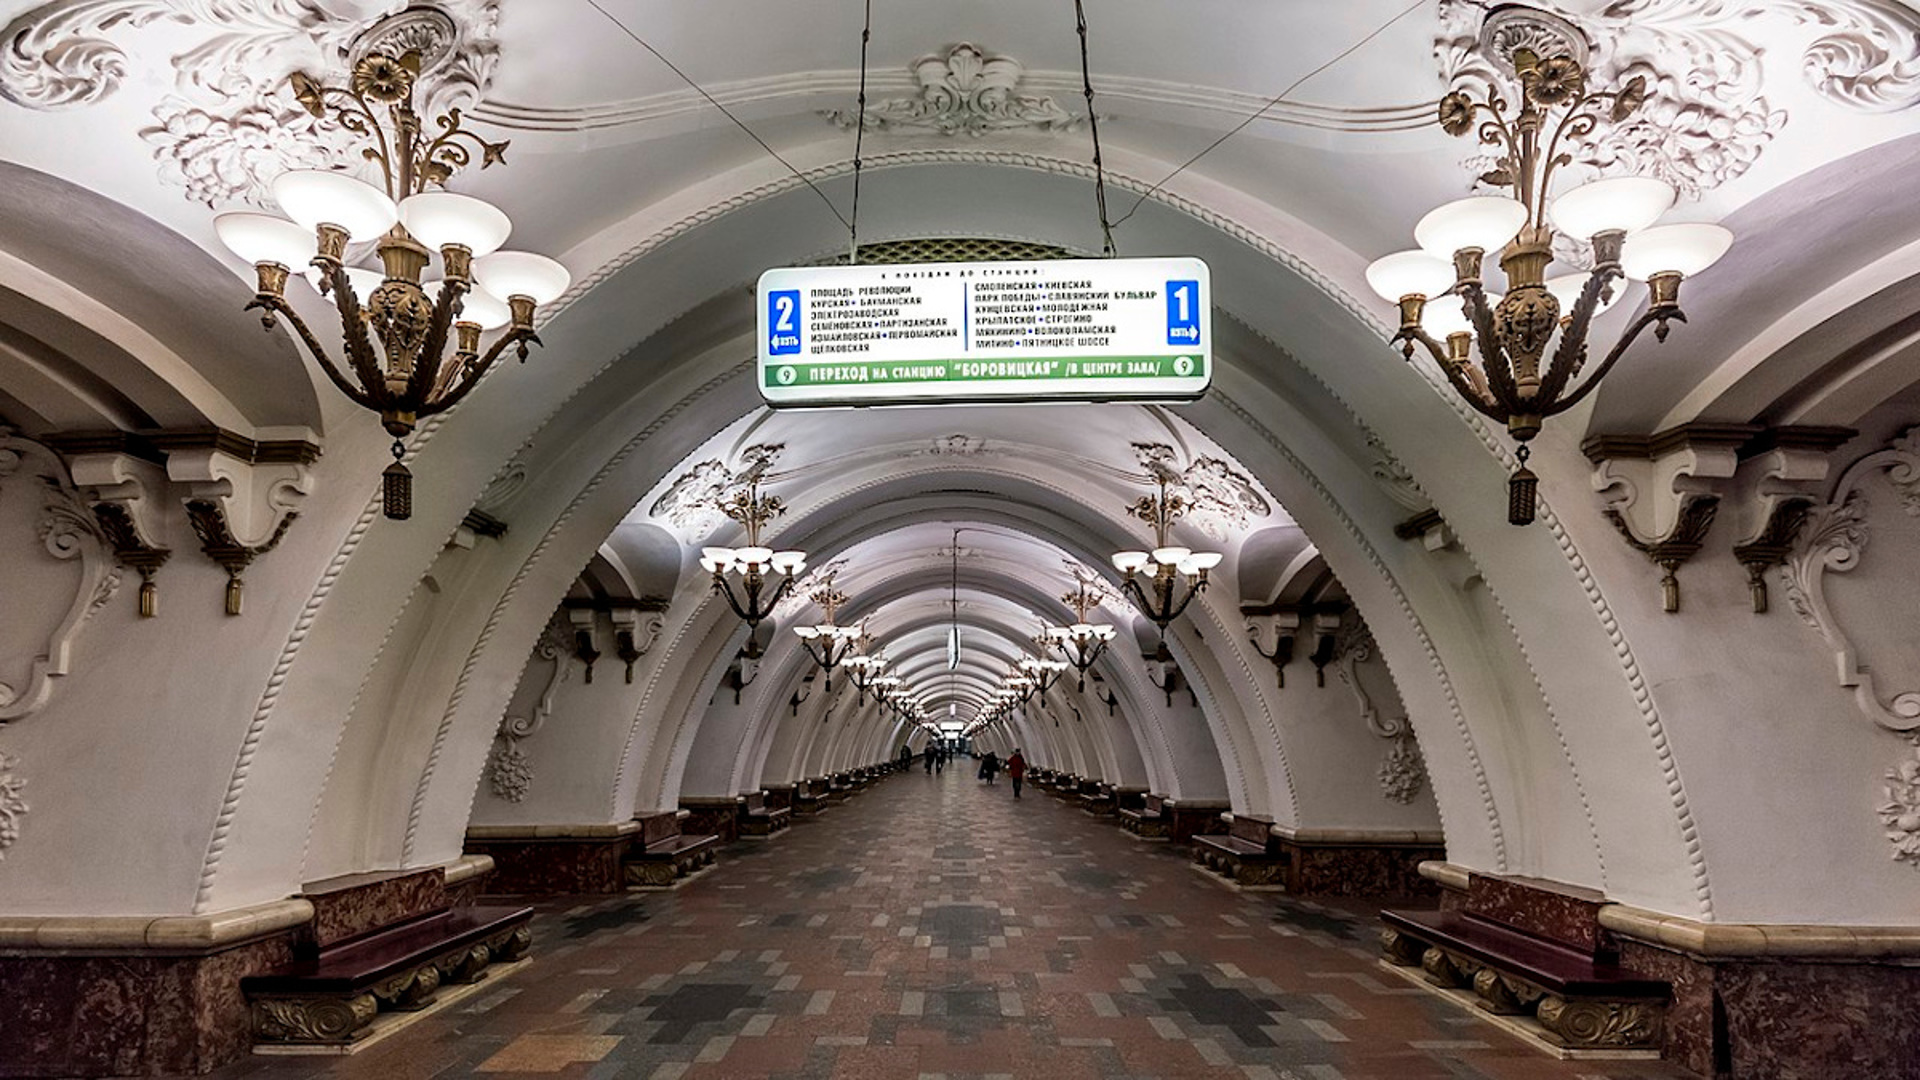 метро первомайская выходы